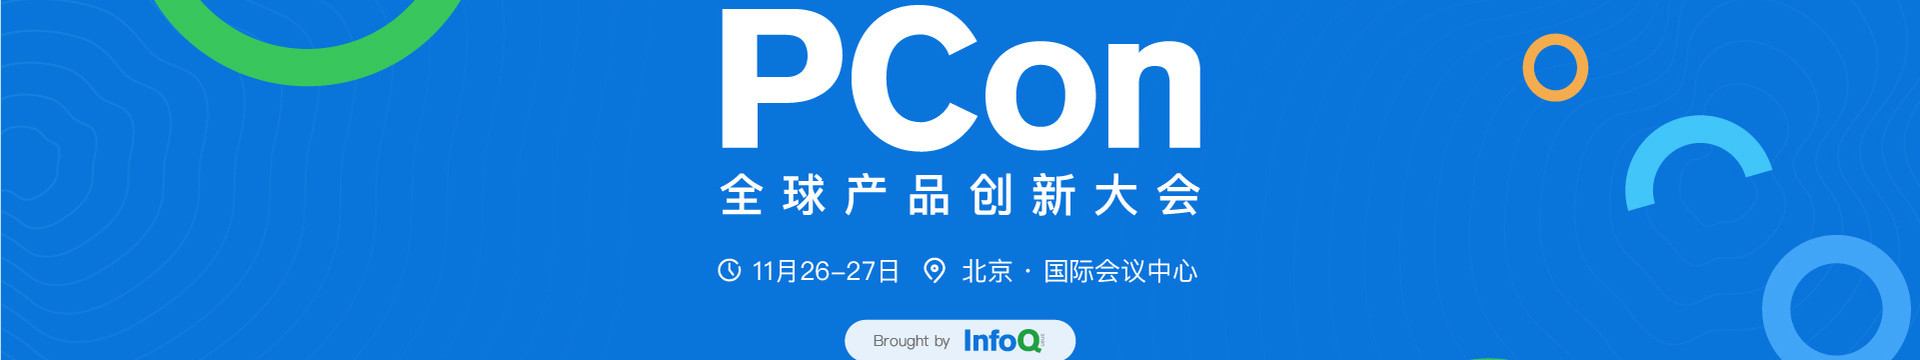 PCon 全球产品创新大会.2021北京站